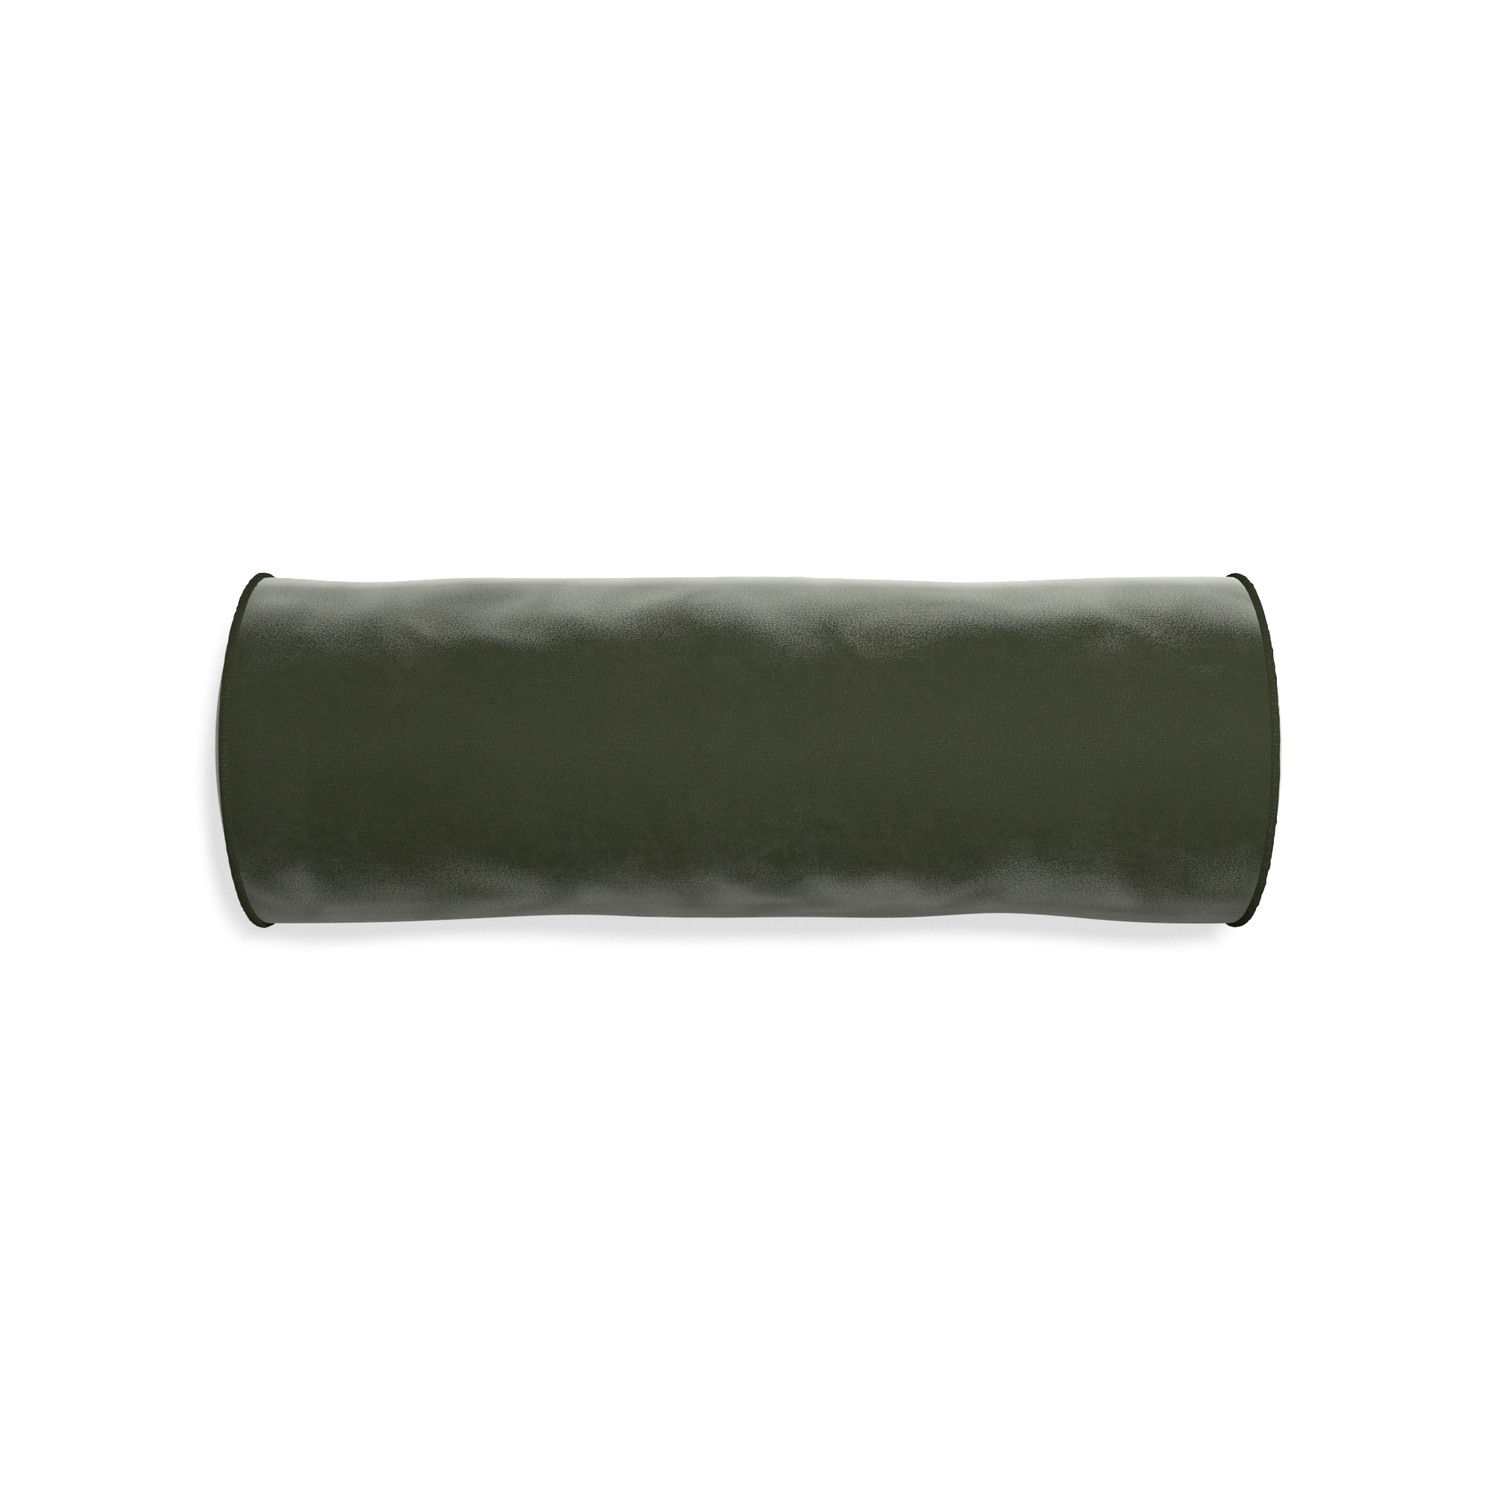 bolster fern green velvet pillow with fern green piping